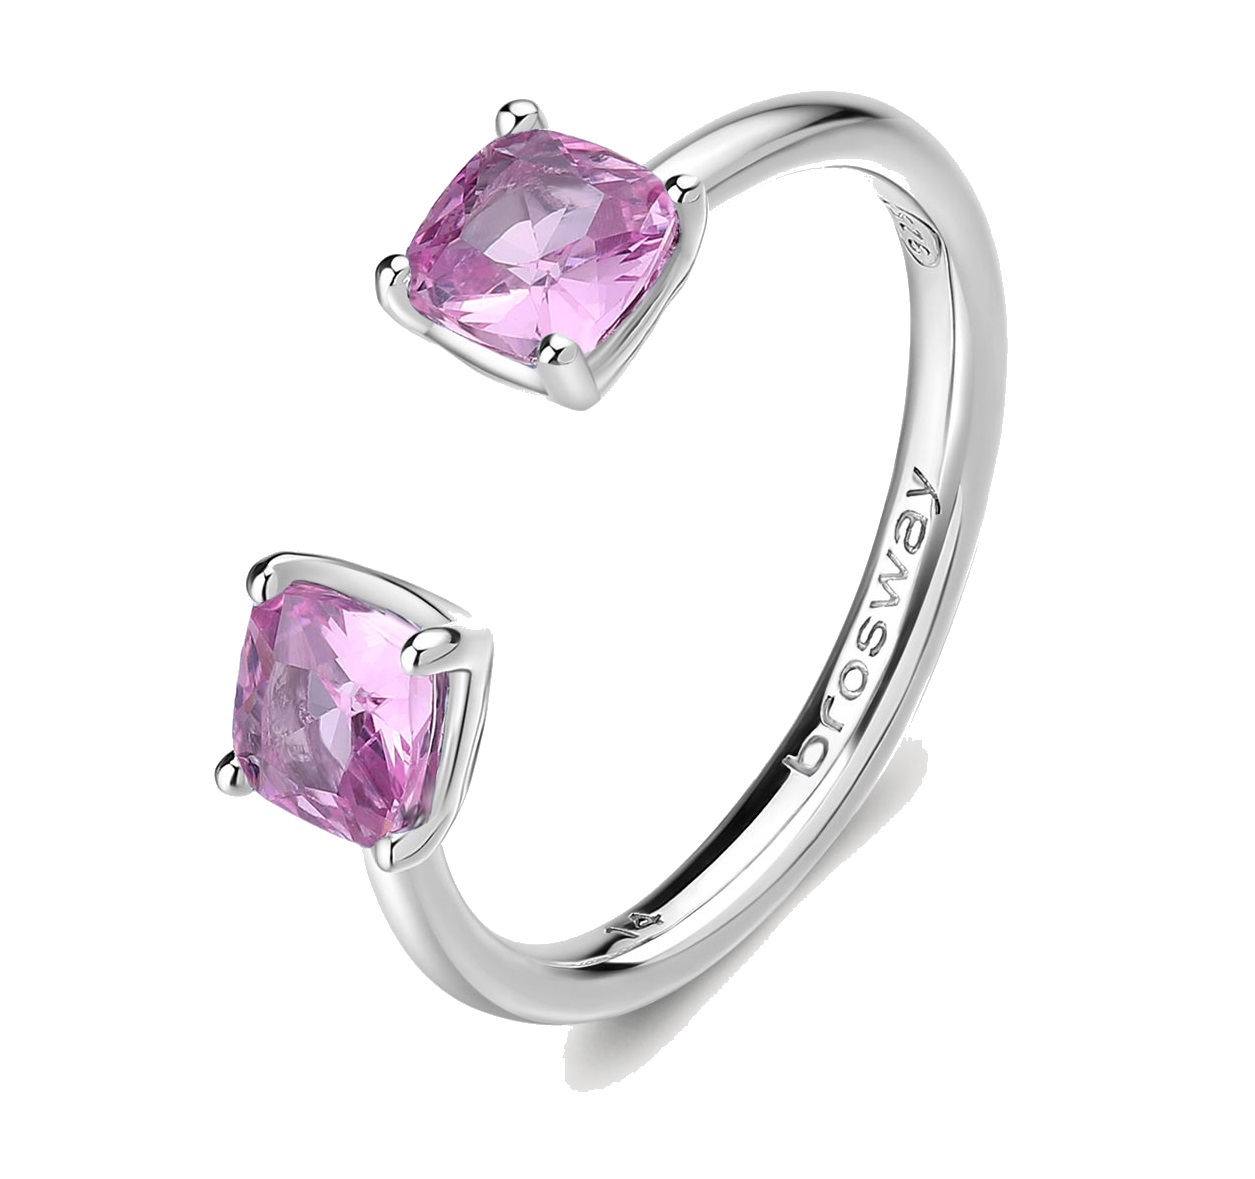 Brosway Otevřený stříbrný prsten Fancy Vibrant Pink FVP11 M (53 - 55 mm)